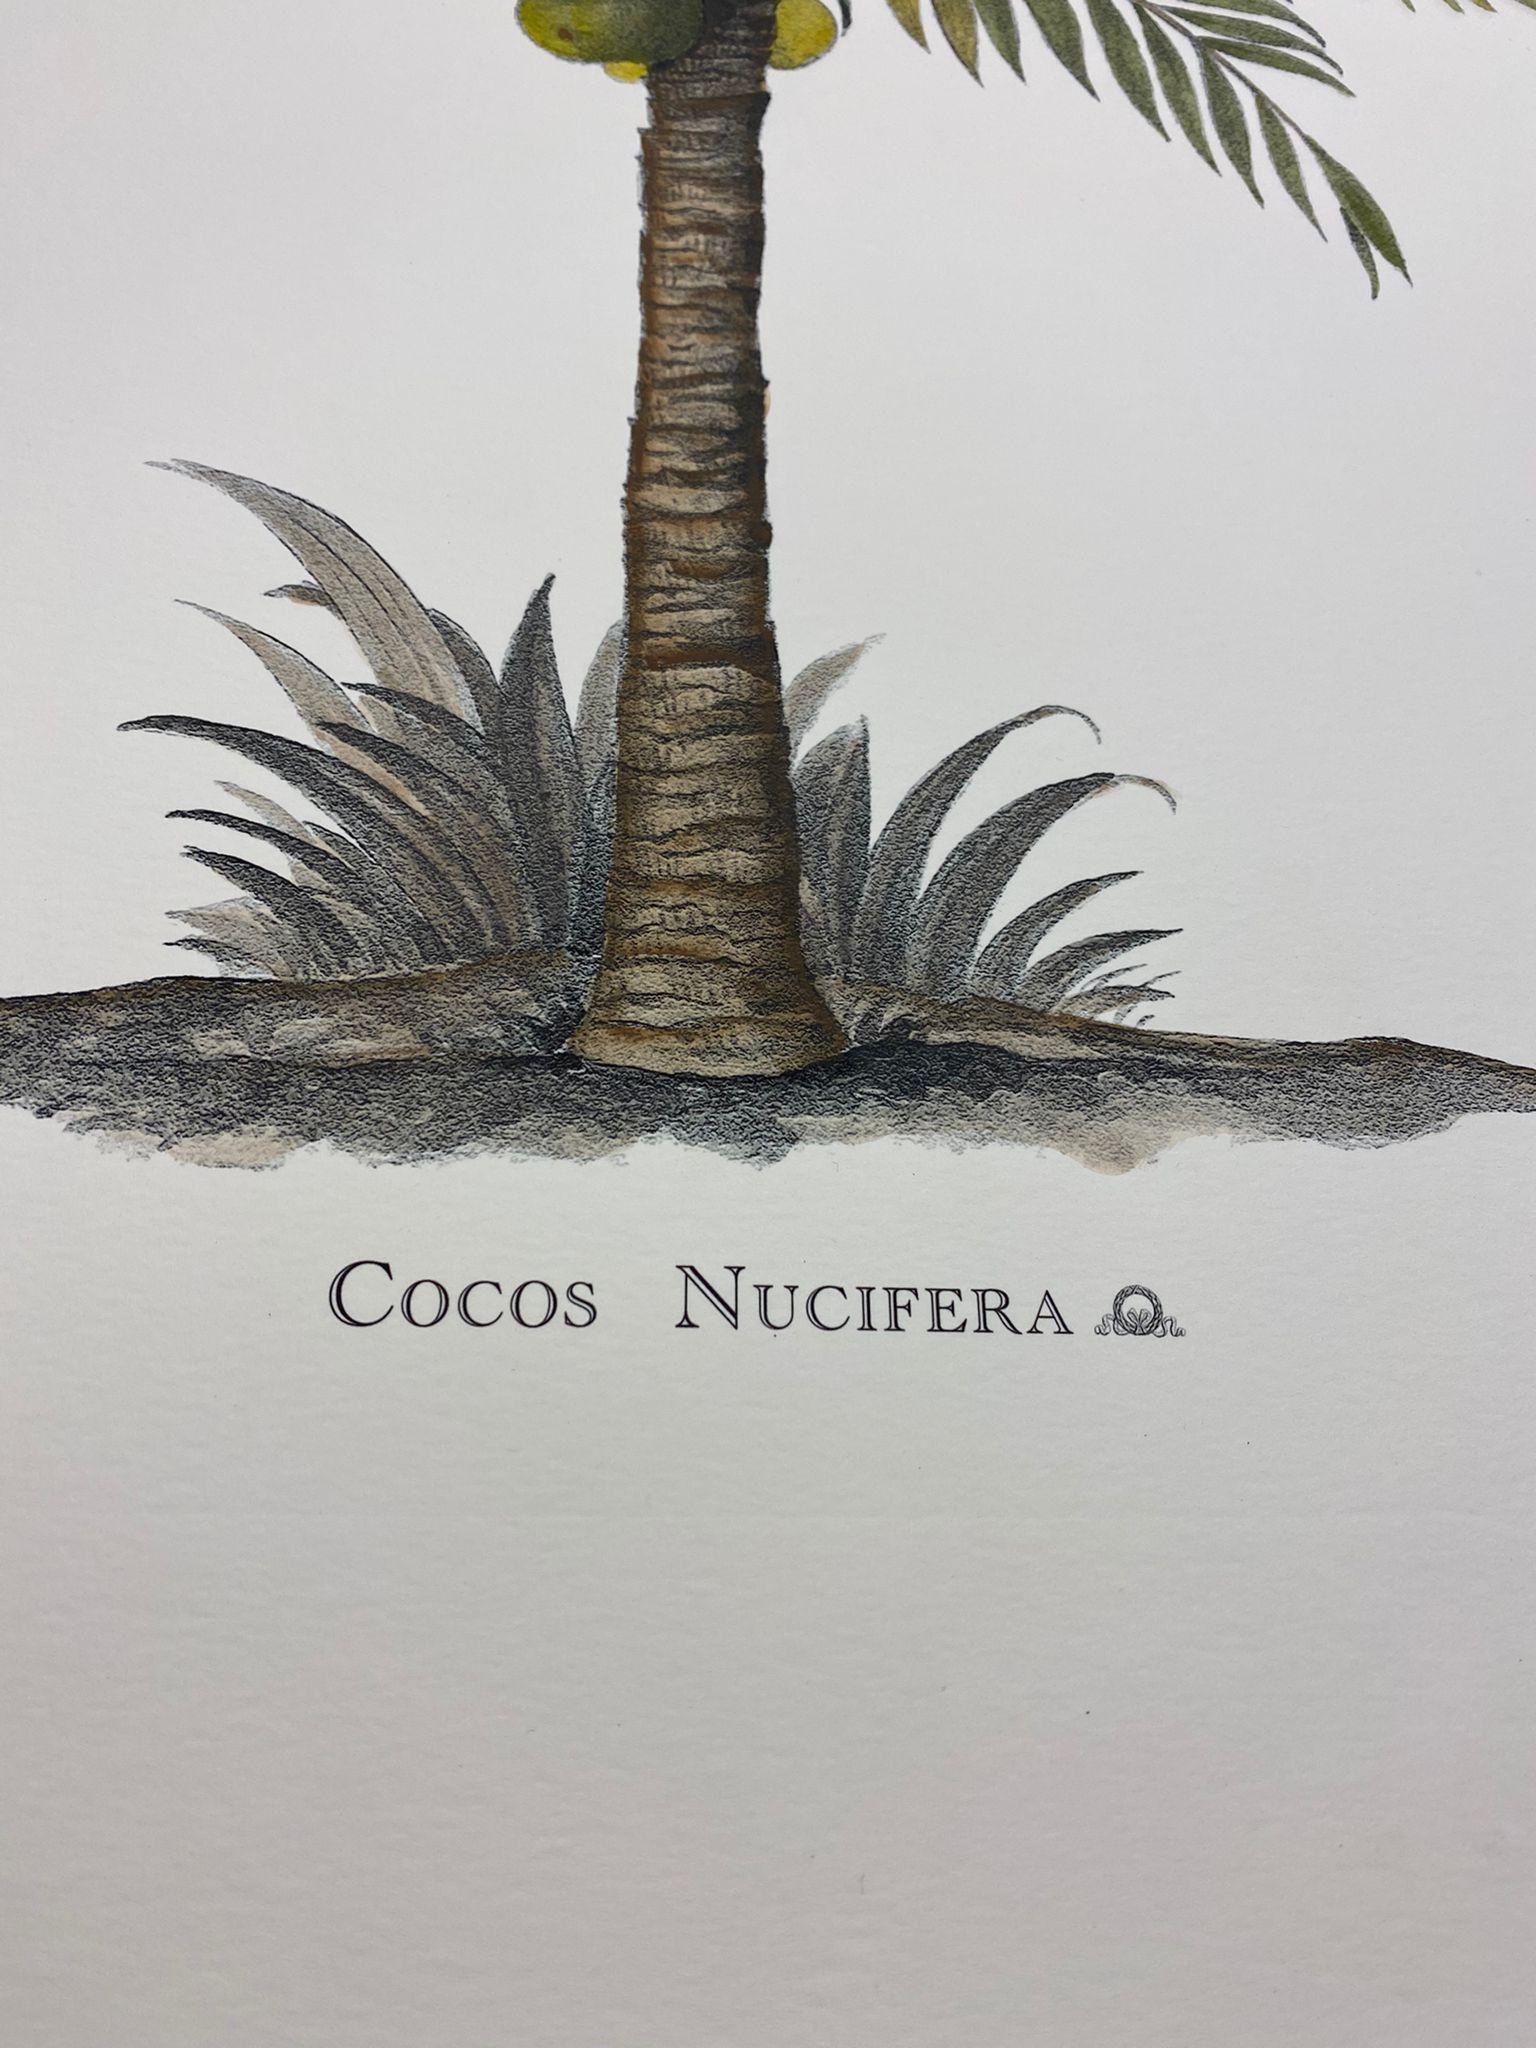 Eleganter handaquarellierter Druck, der Cocos Nucifera aus der Familie der Palmen darstellt.

Dieser Druck im botanischen Stil ist in 4 verschiedenen natürlichen Darstellungen erhältlich, um eine helle und fröhliche Komposition zu schaffen:
-